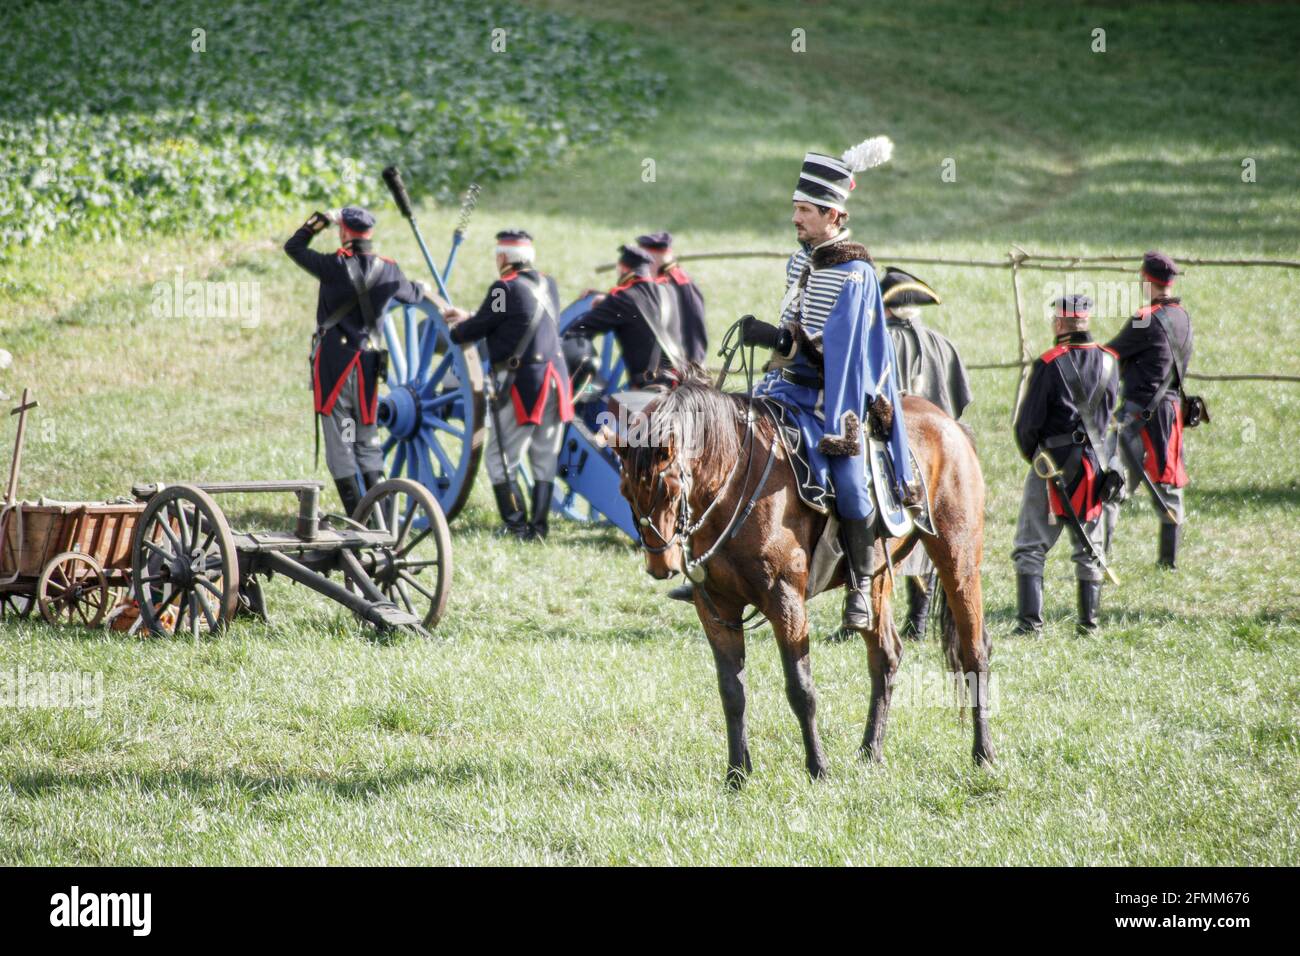 Rekonstitution de la bataille franco-prussienne de Jena / Iena / Auerstedt 1806 - 2016 Stockfoto